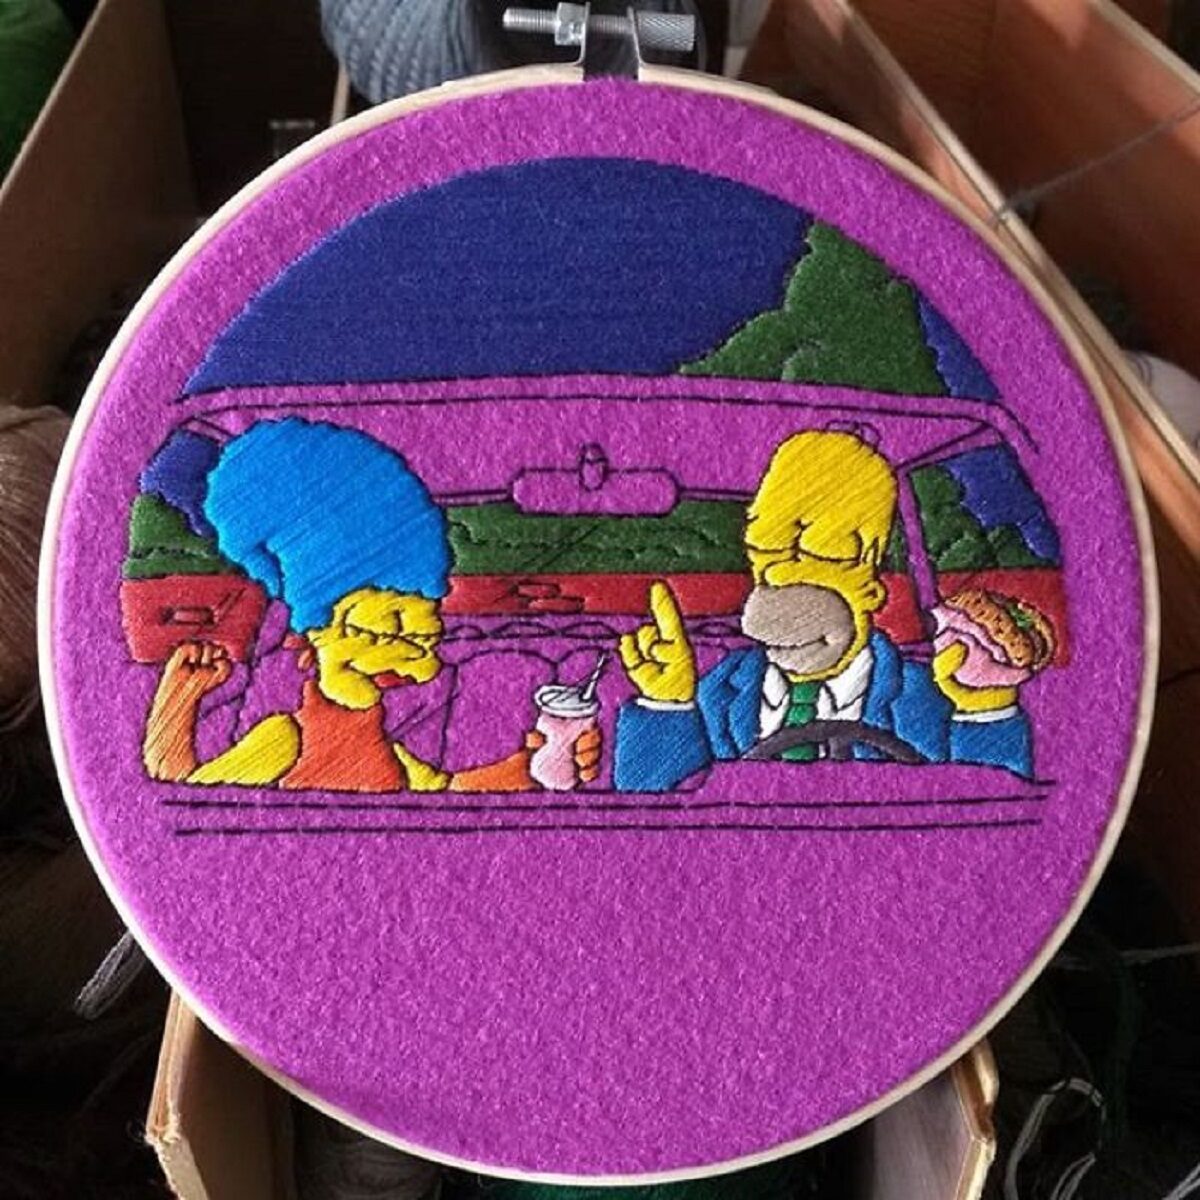 Artista Gabriela Martinez cria bordados de cenas de Os Simpsons 8